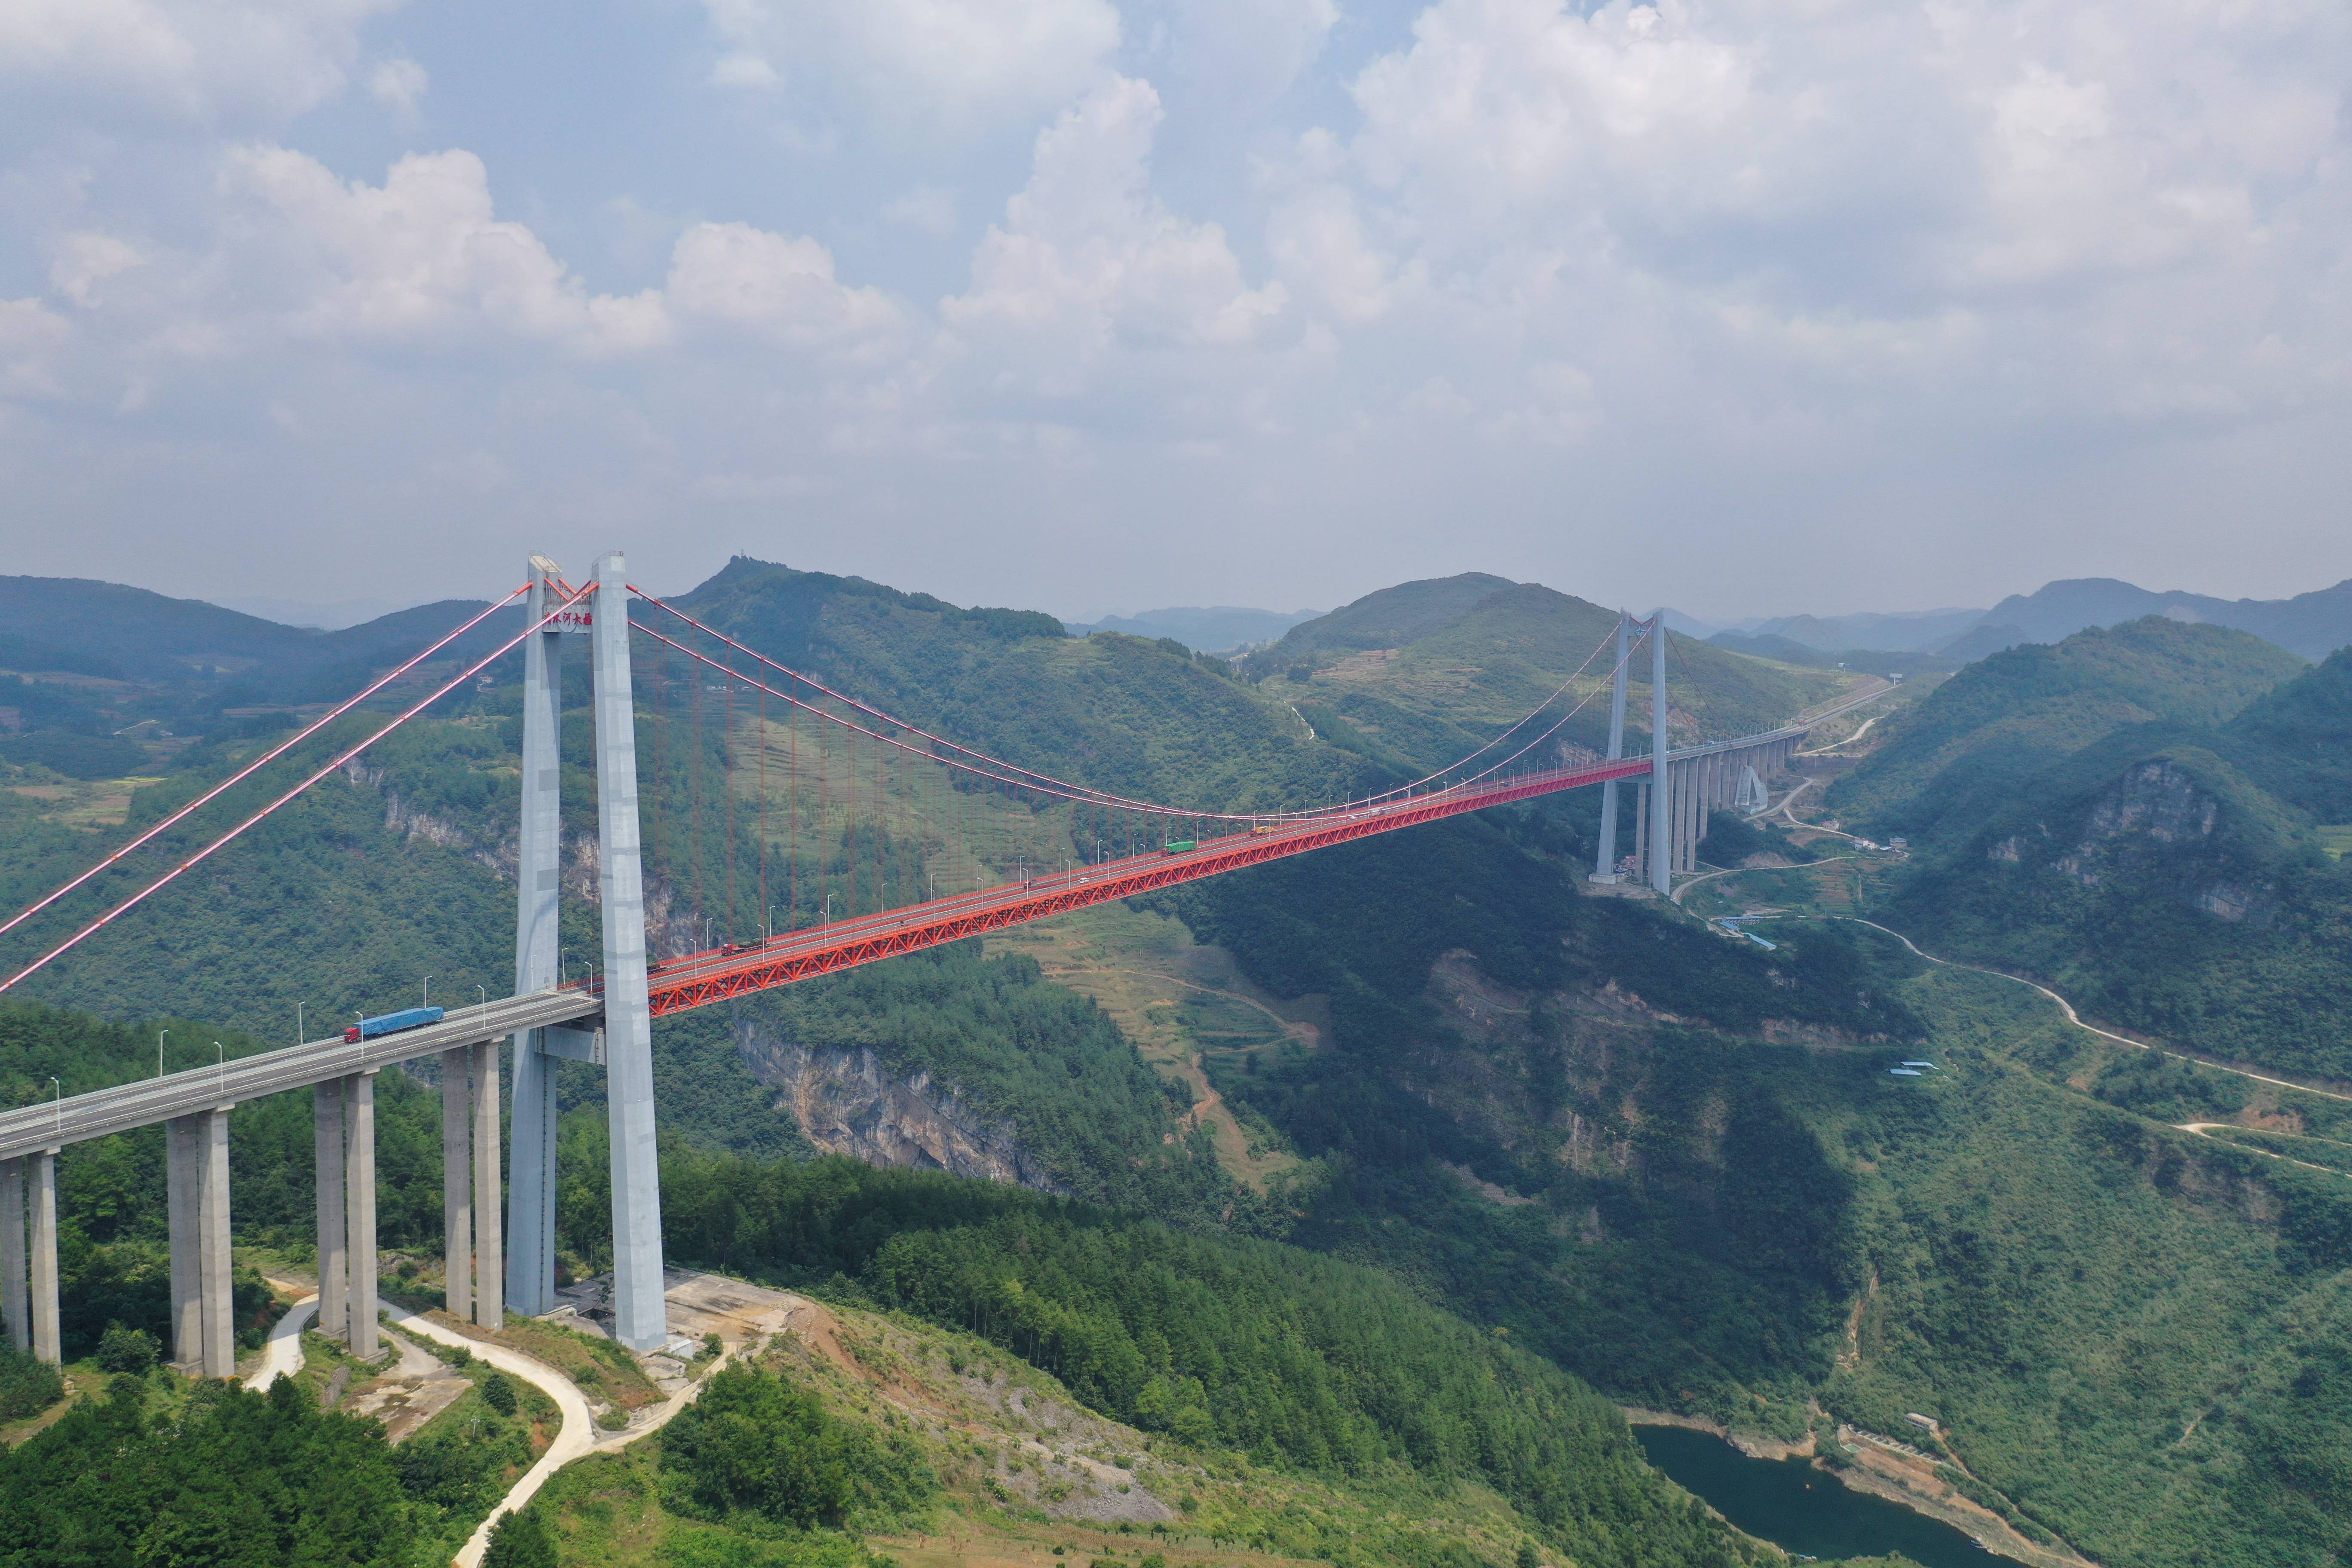 中国被称为基建狂魔,在贵州能得到很好的印证,你看看贵州的那些大桥